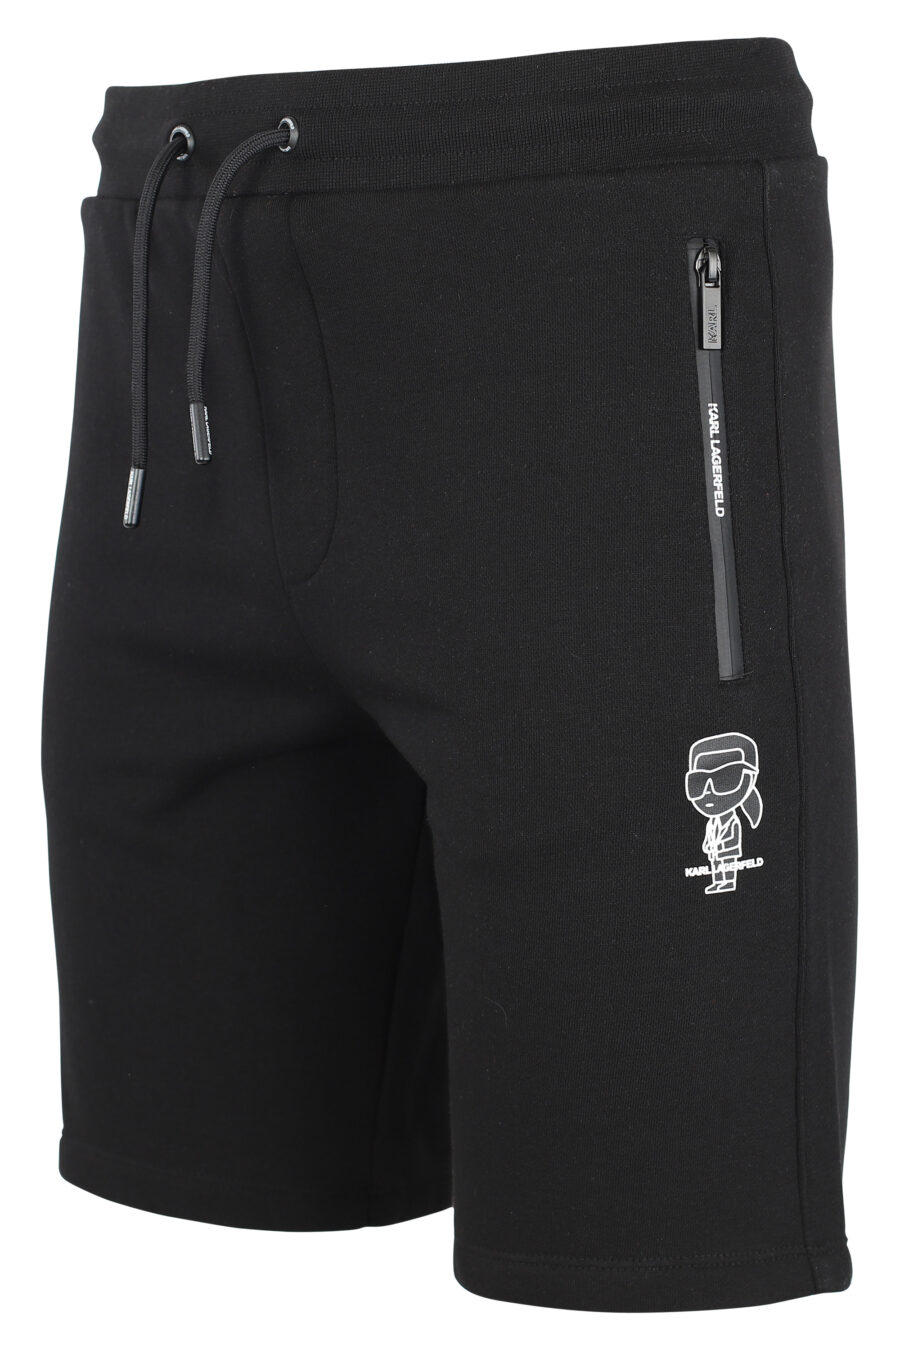 Pantalón de chándal negro corto con minilogo "karl" en silueta blanco - IMG 9507